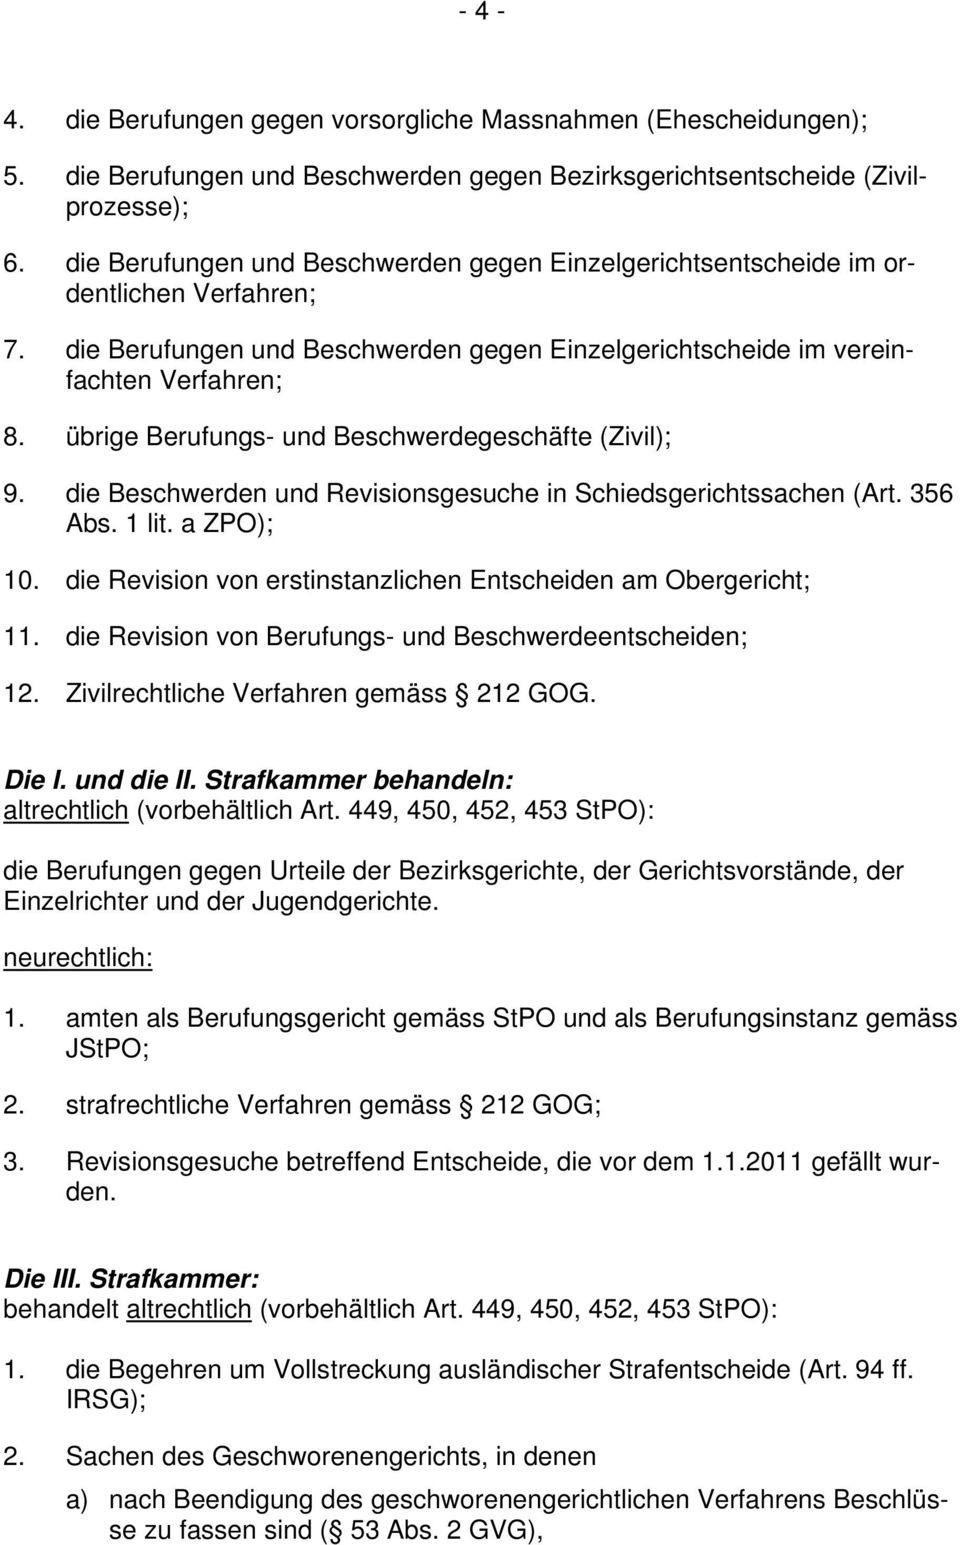 übrige Berufungs- und Beschwerdegeschäfte (Zivil); 9. die Beschwerden und Revisionsgesuche in Schiedsgerichtssachen (Art. 356 Abs. 1 lit. a ZPO); 10.